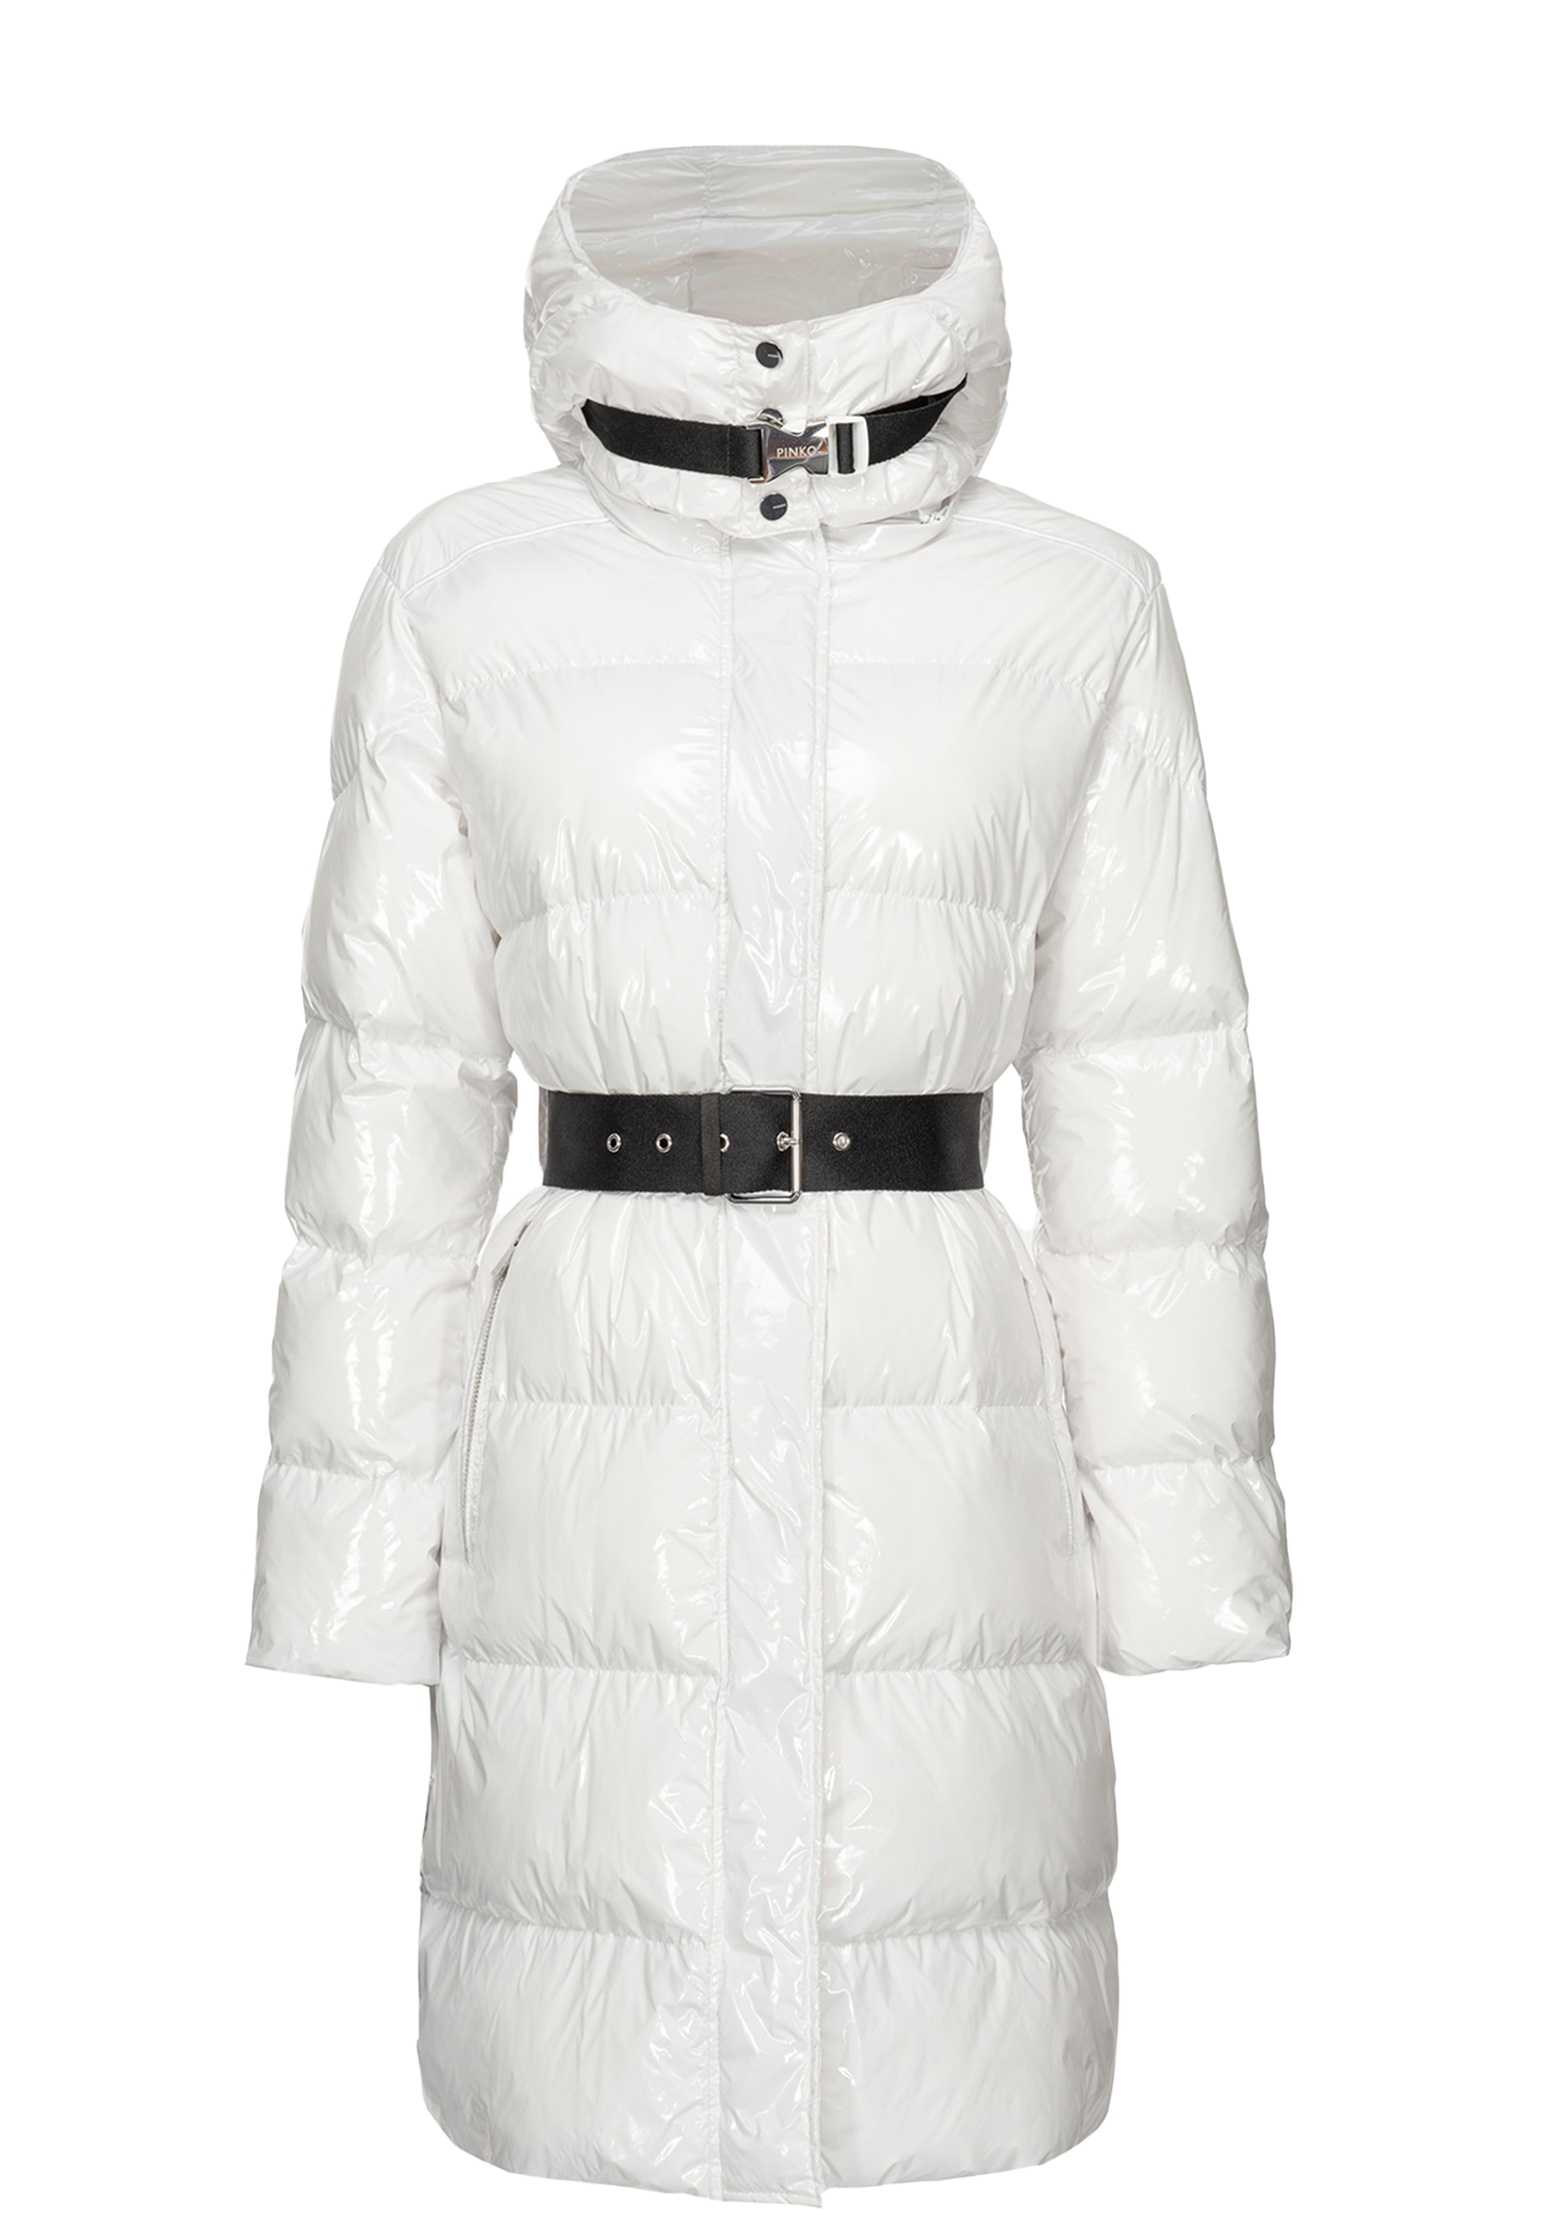 

Пальто женское Pinko 136899 белое 42 IT, Белый, 136899